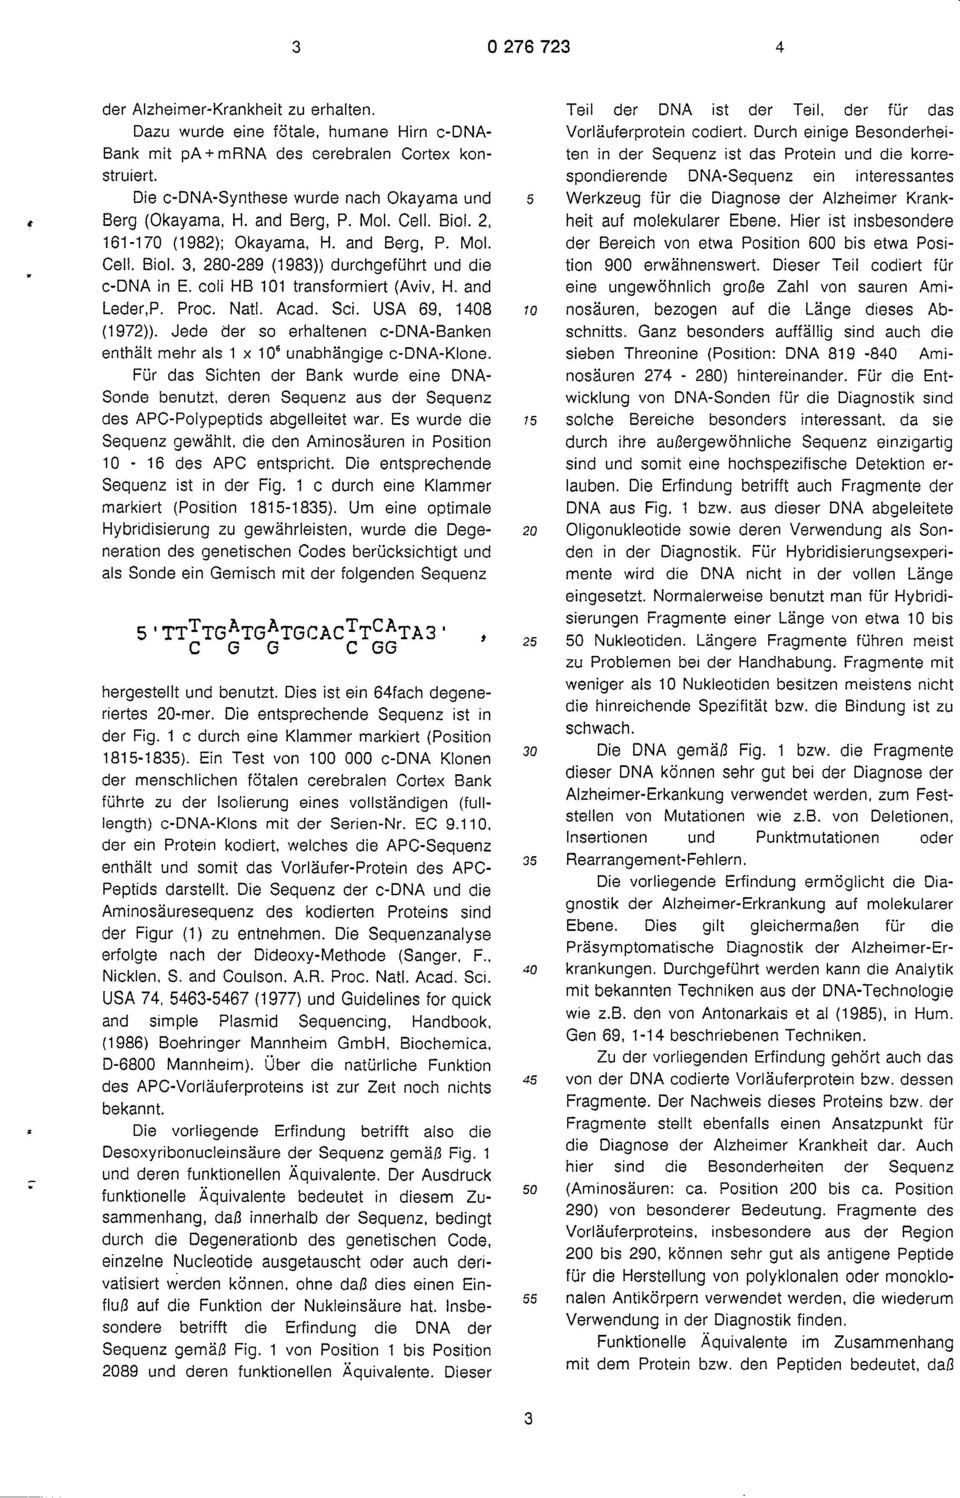 3, 280-289 (1983)) durchgeführt und die c-dna in E. coli HB 101 transformiert (Aviv, H. and Leder.P. Proc. Natl. Acad. Sei. USA 69, 1408 (1972)).